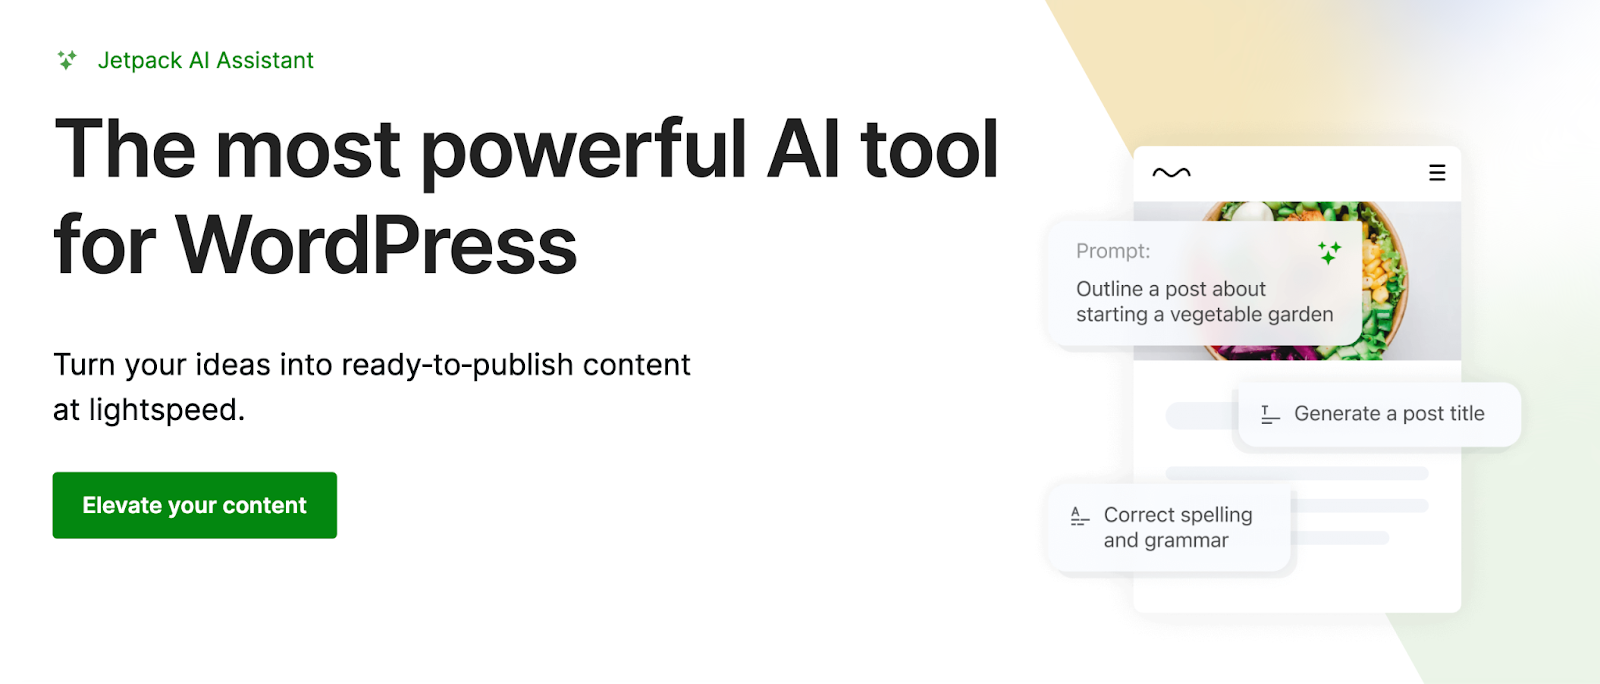 Asisten Jetpack AI memungkinkan Anda beralih dari sebuah ide ke konten berkualitas tinggi dalam hitungan menit, menjadikannya salah satu plugin AI paling kuat dan berguna untuk WordPress.